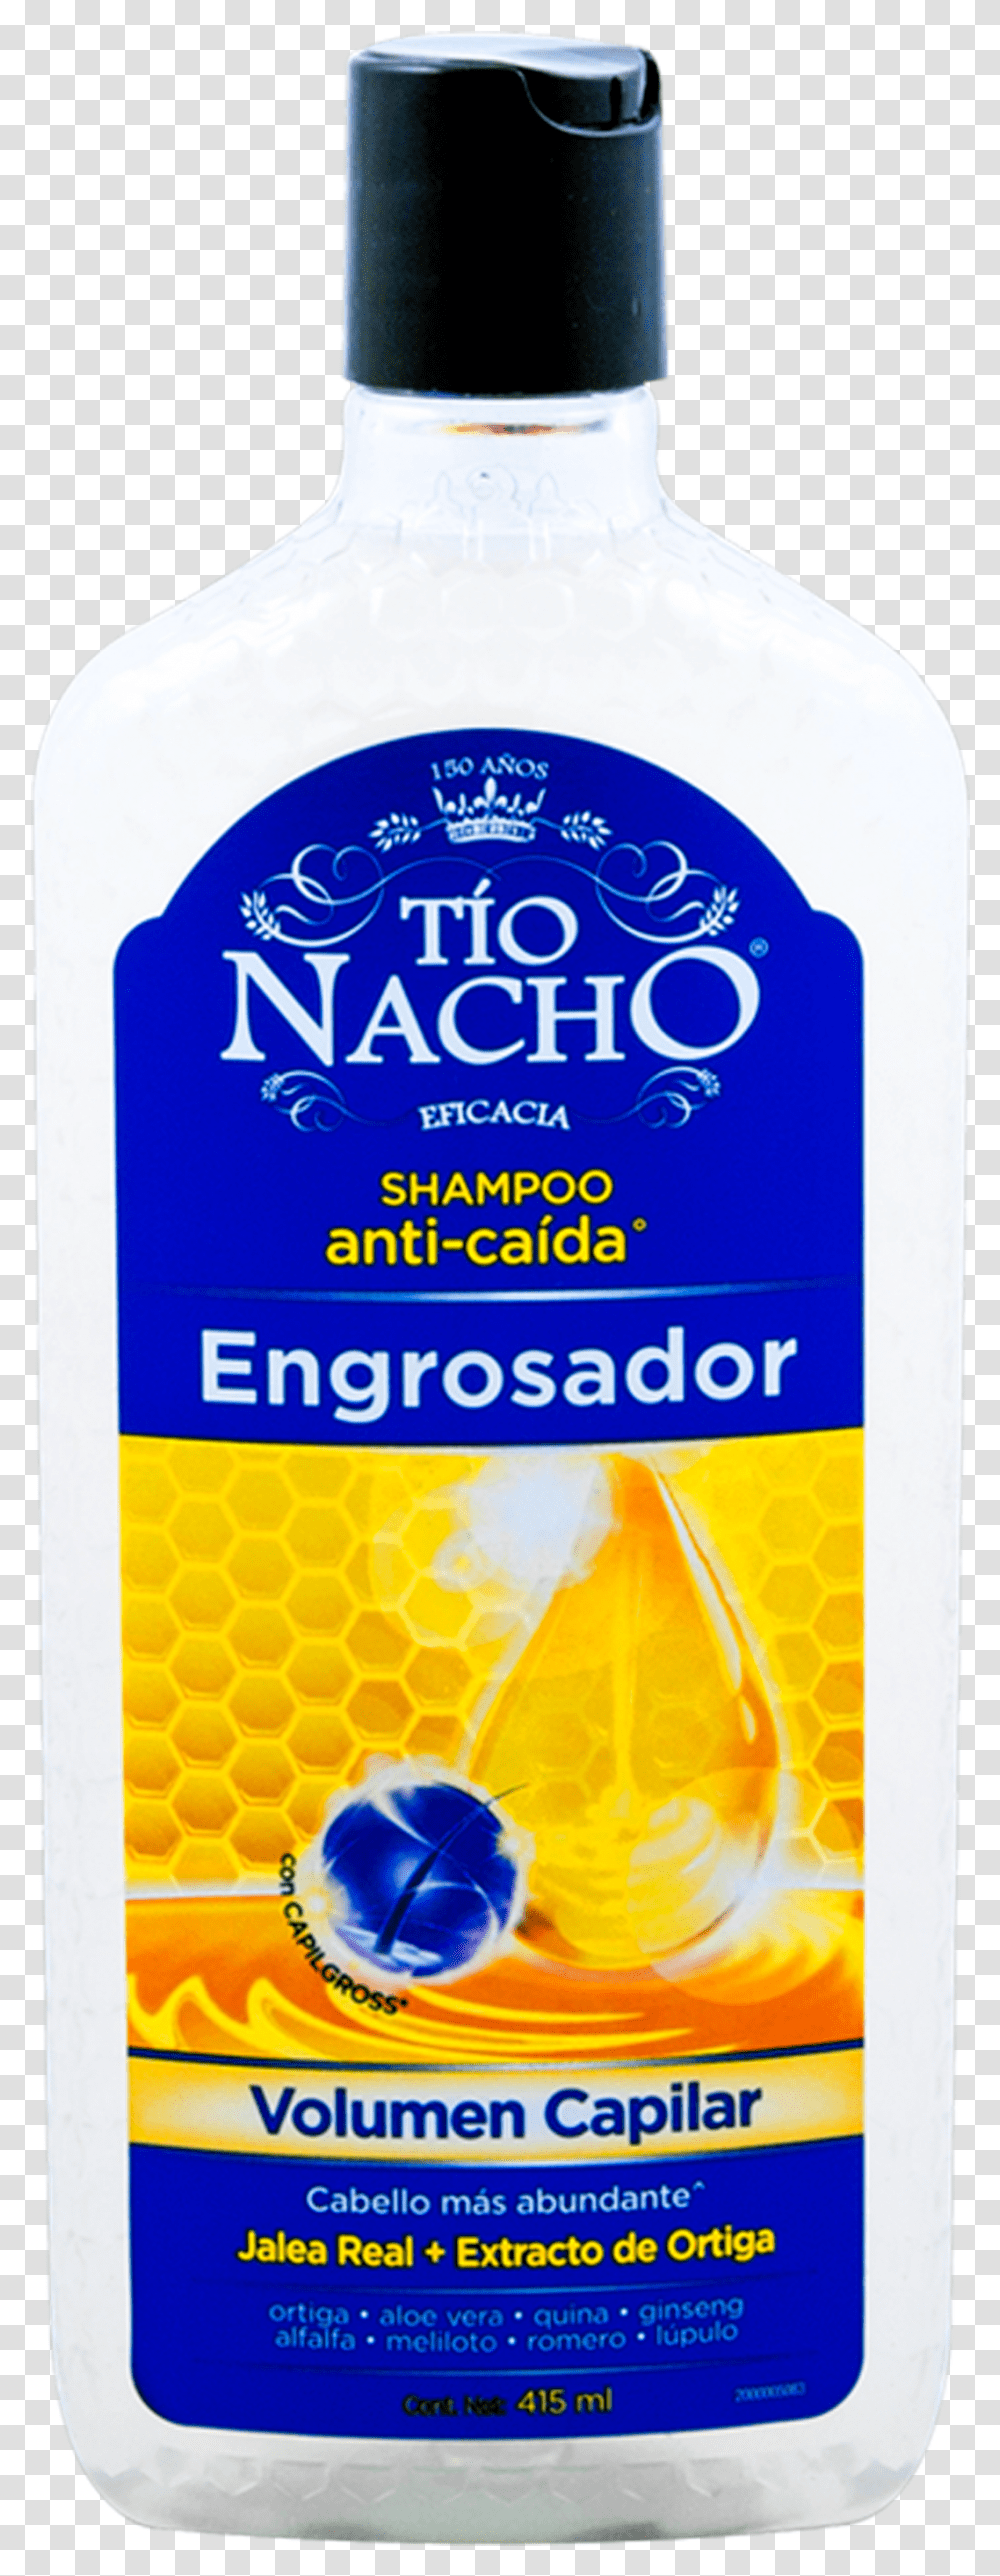 Shampoo Tio Nacho Engrosador, Food, Beer, Alcohol, Beverage Transparent Png